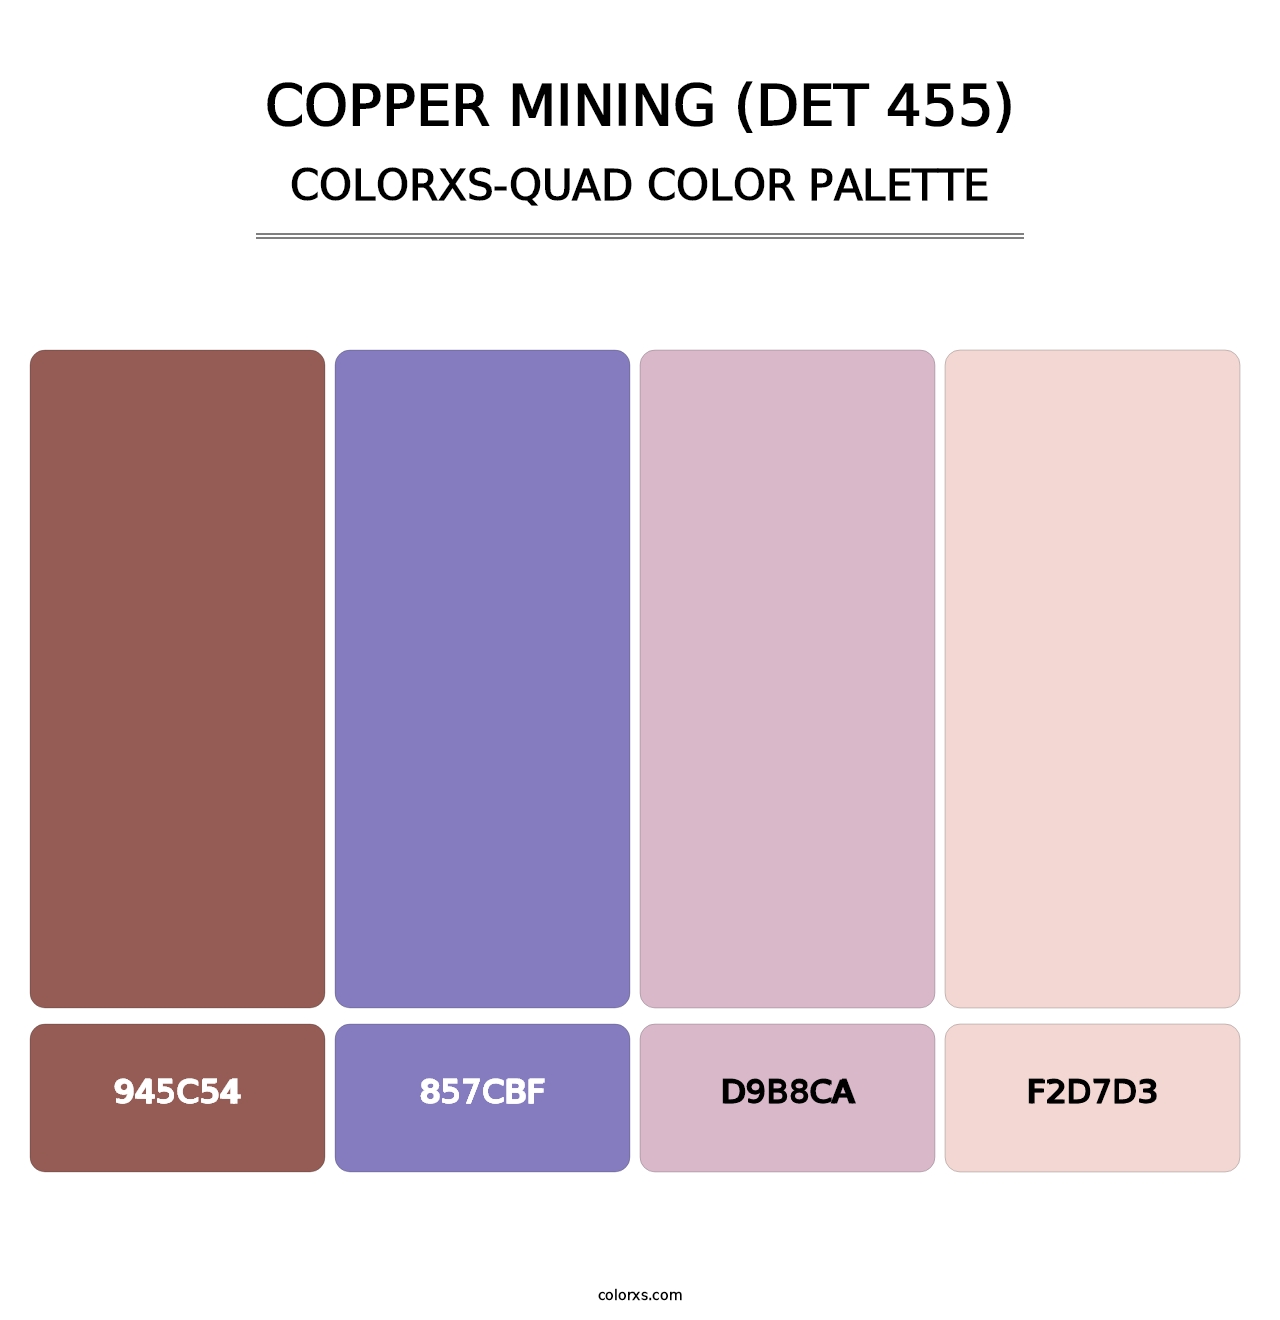 Copper Mining (DET 455) - Colorxs Quad Palette